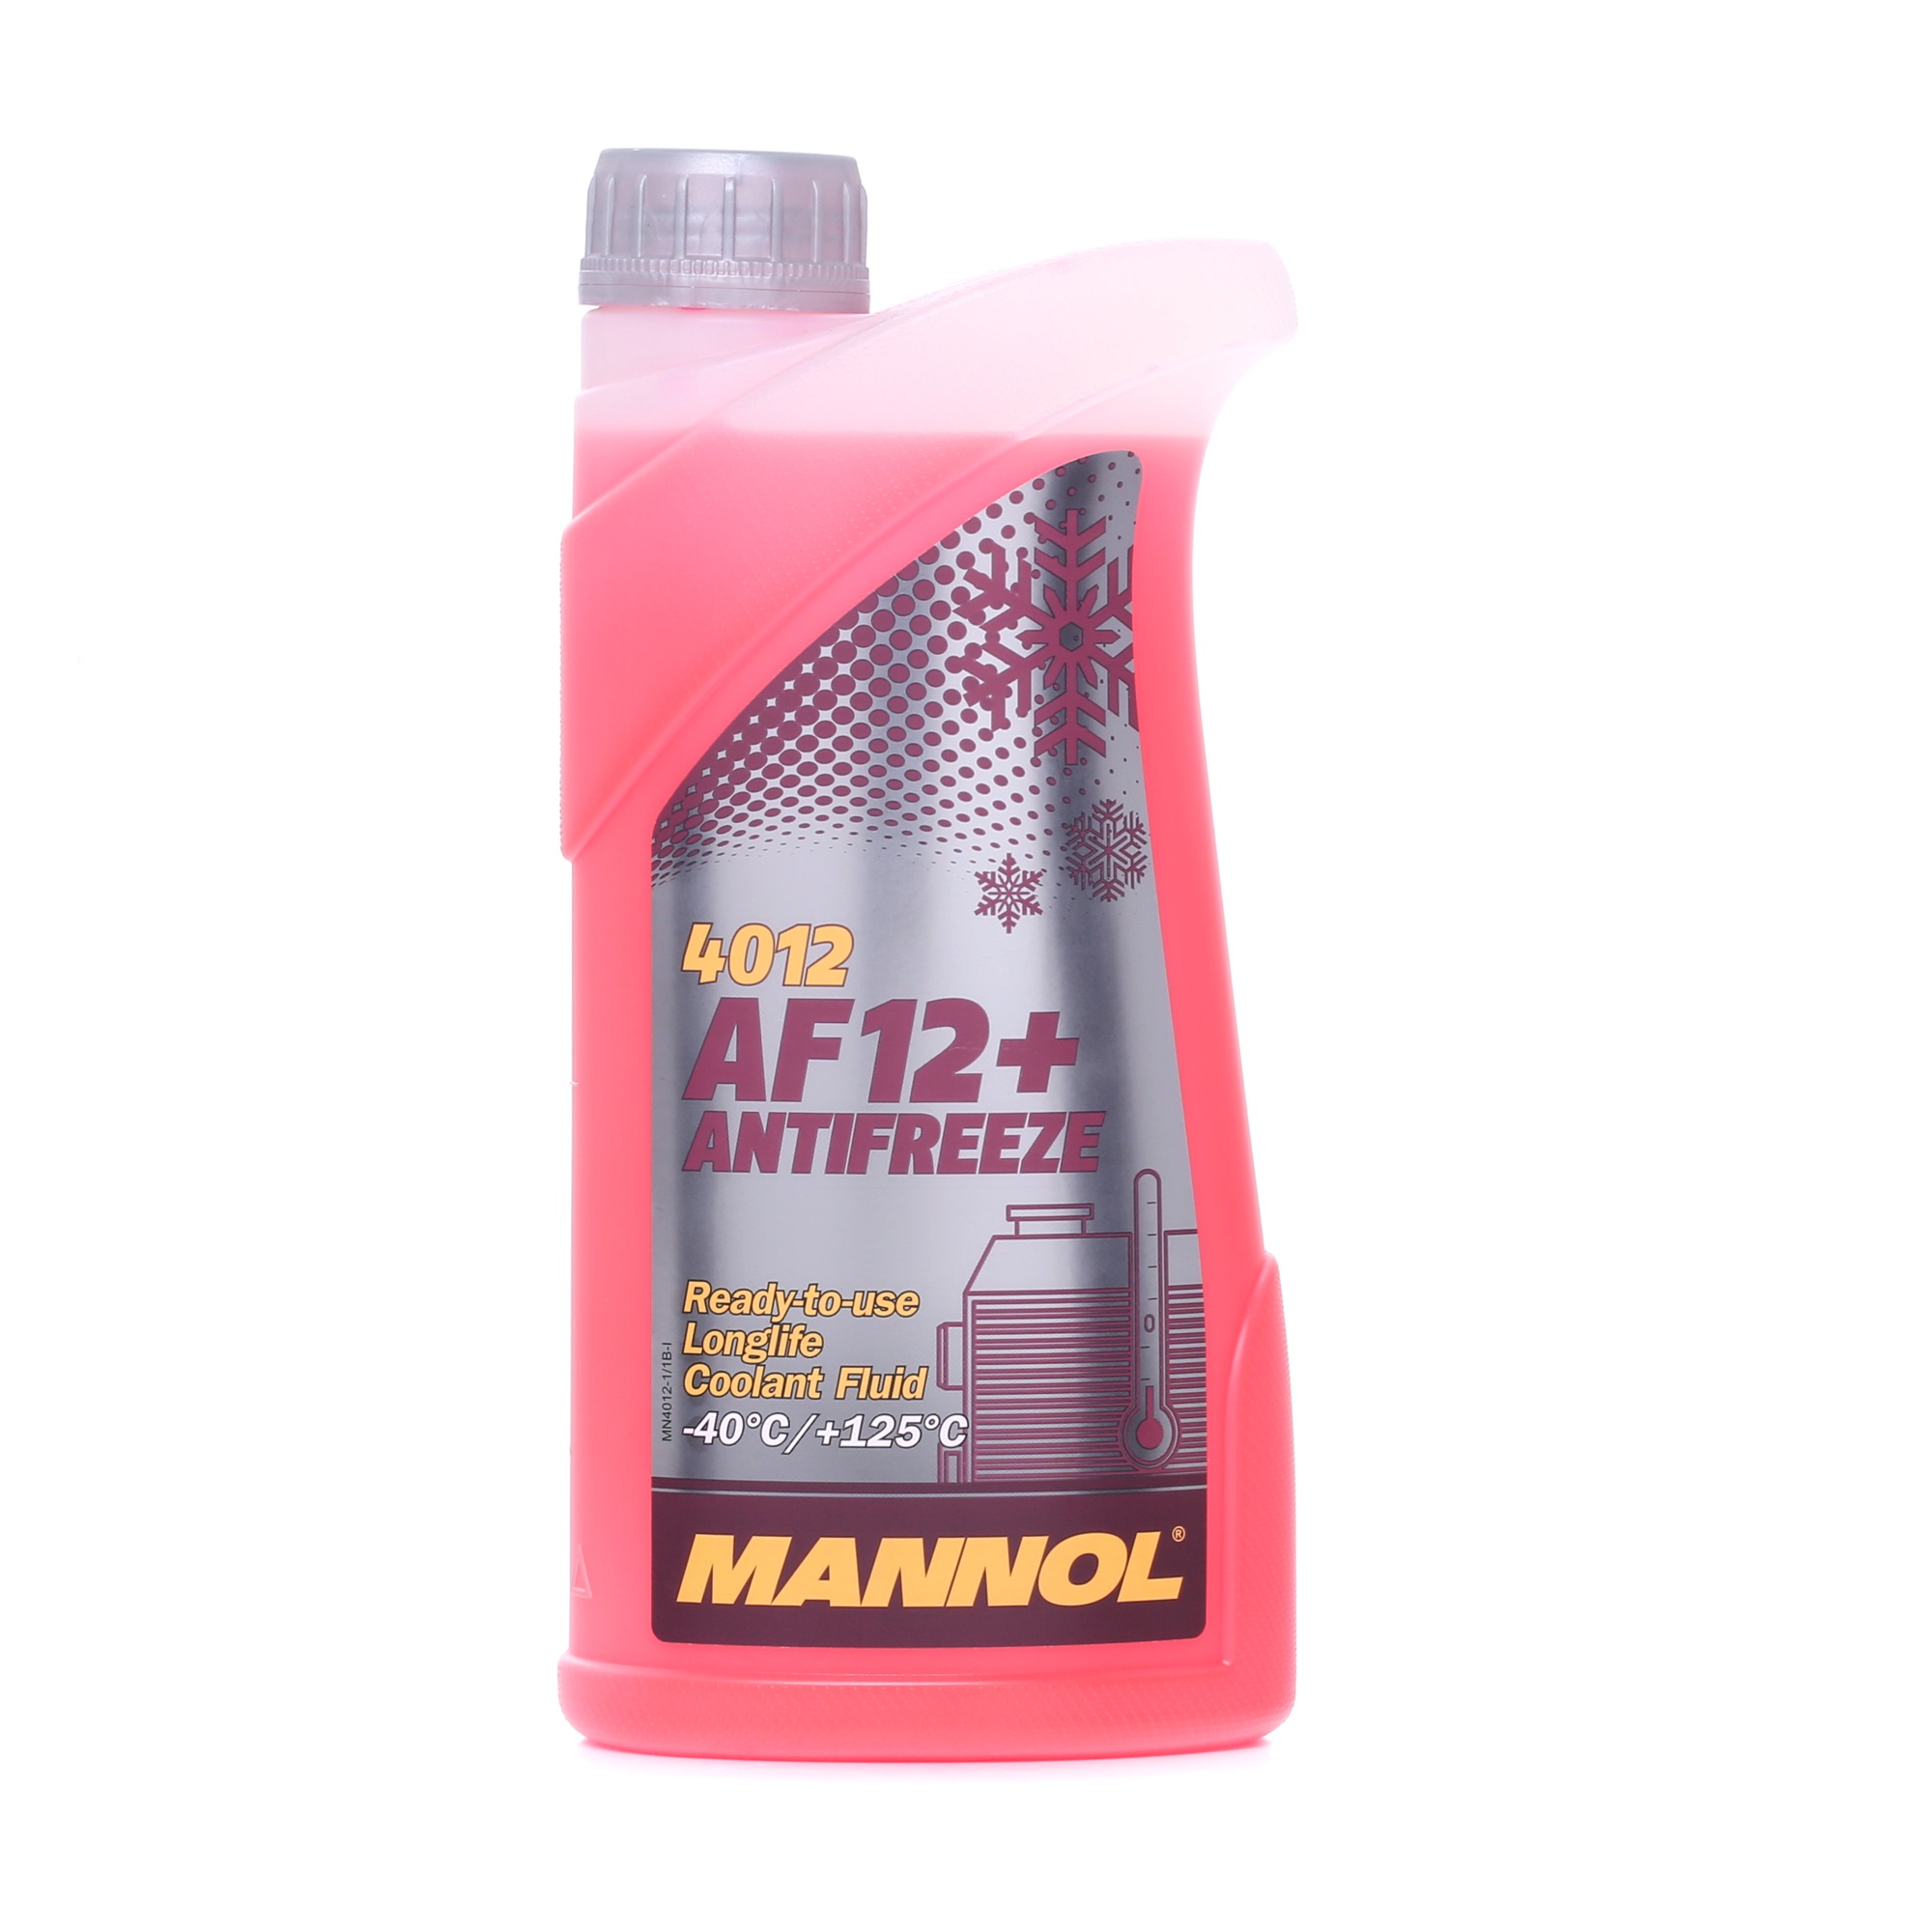 MANNOL AF12+ MN4012-1 Antigel G12+ Rouge, 1I